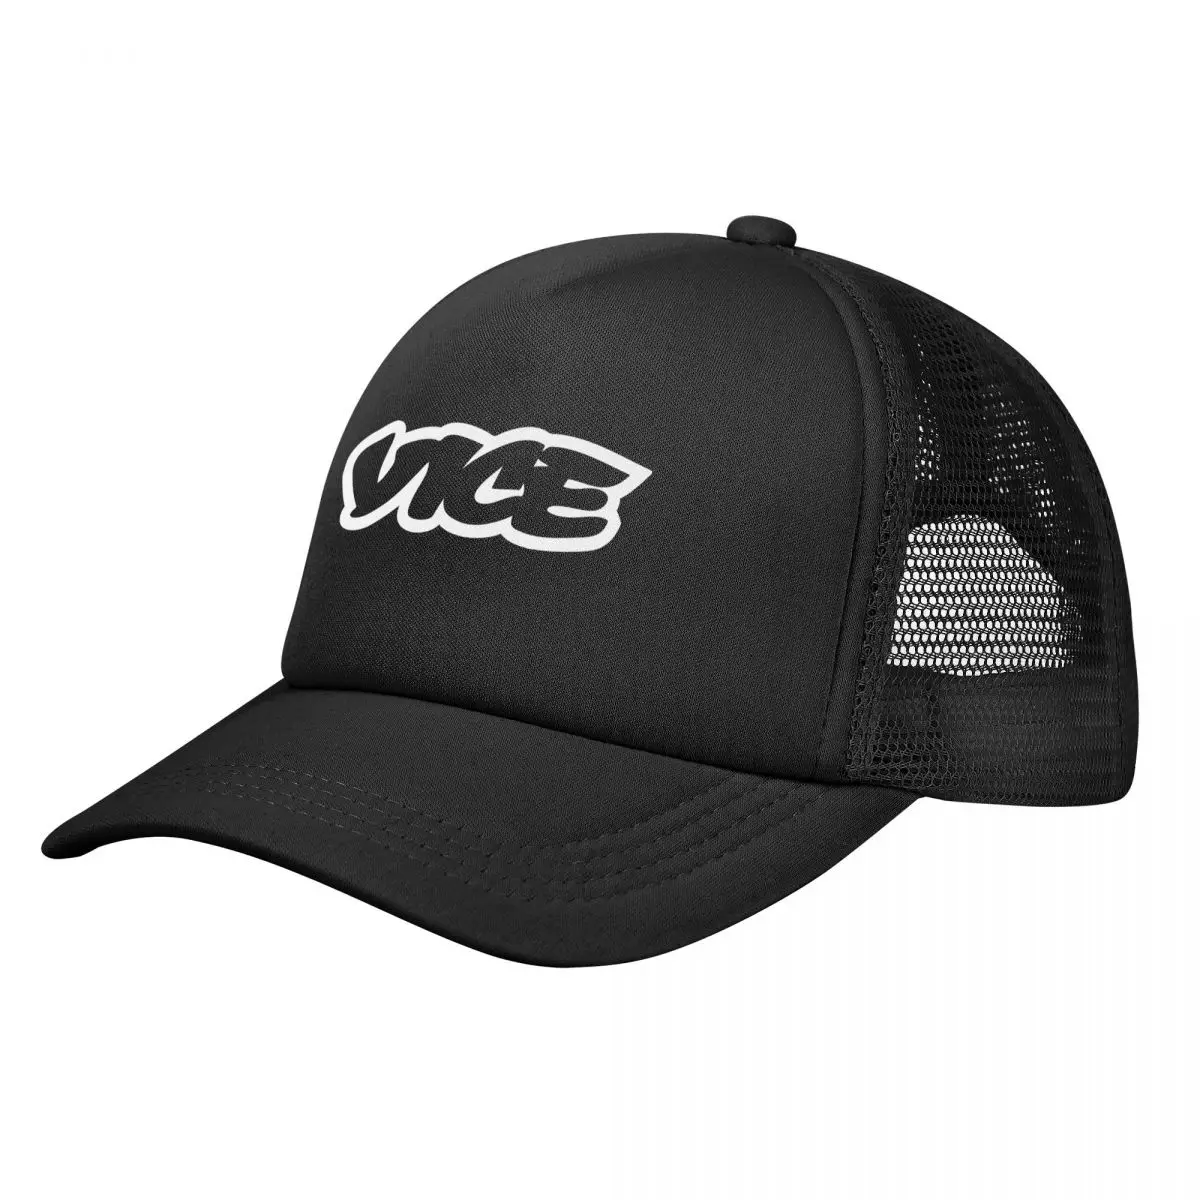 

Vice Original Adjustable Mesh Trucker Hat for Men and Women